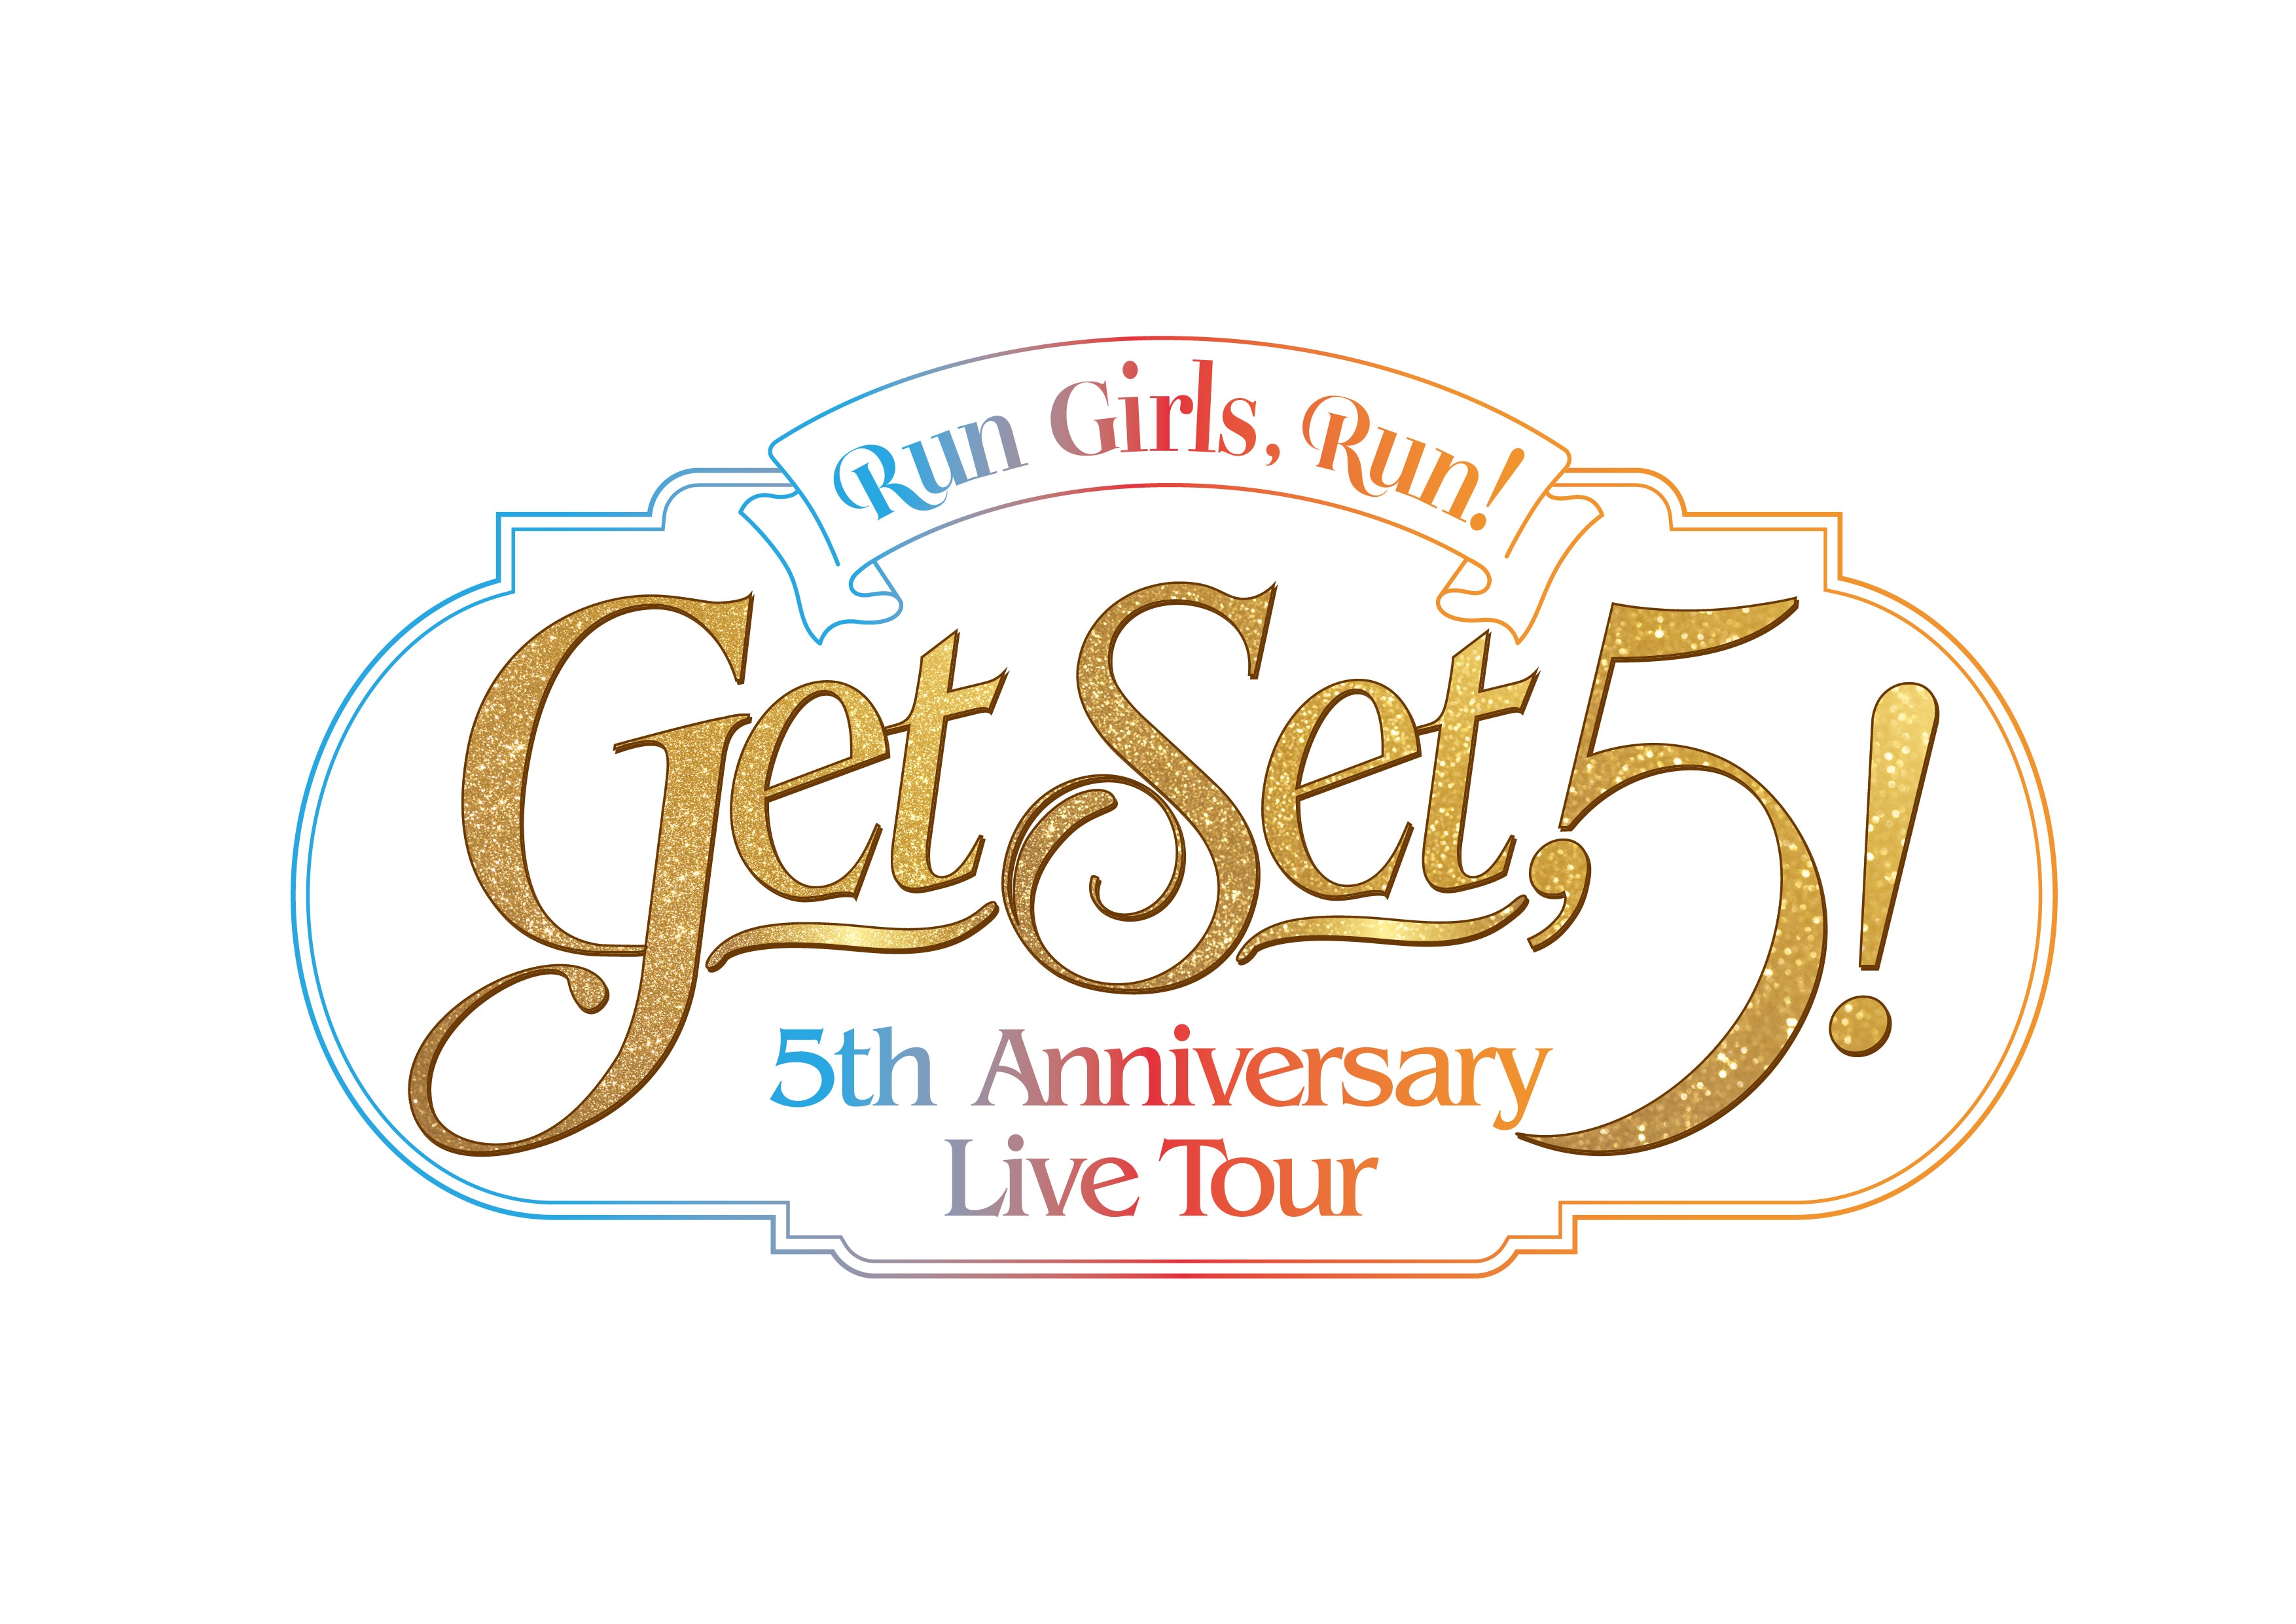 当日券ご案内！9月25日(日) 品川インターシティーホール<br />
Run Girls,Run！5th Anniversary Live Tour Get Set,5 !